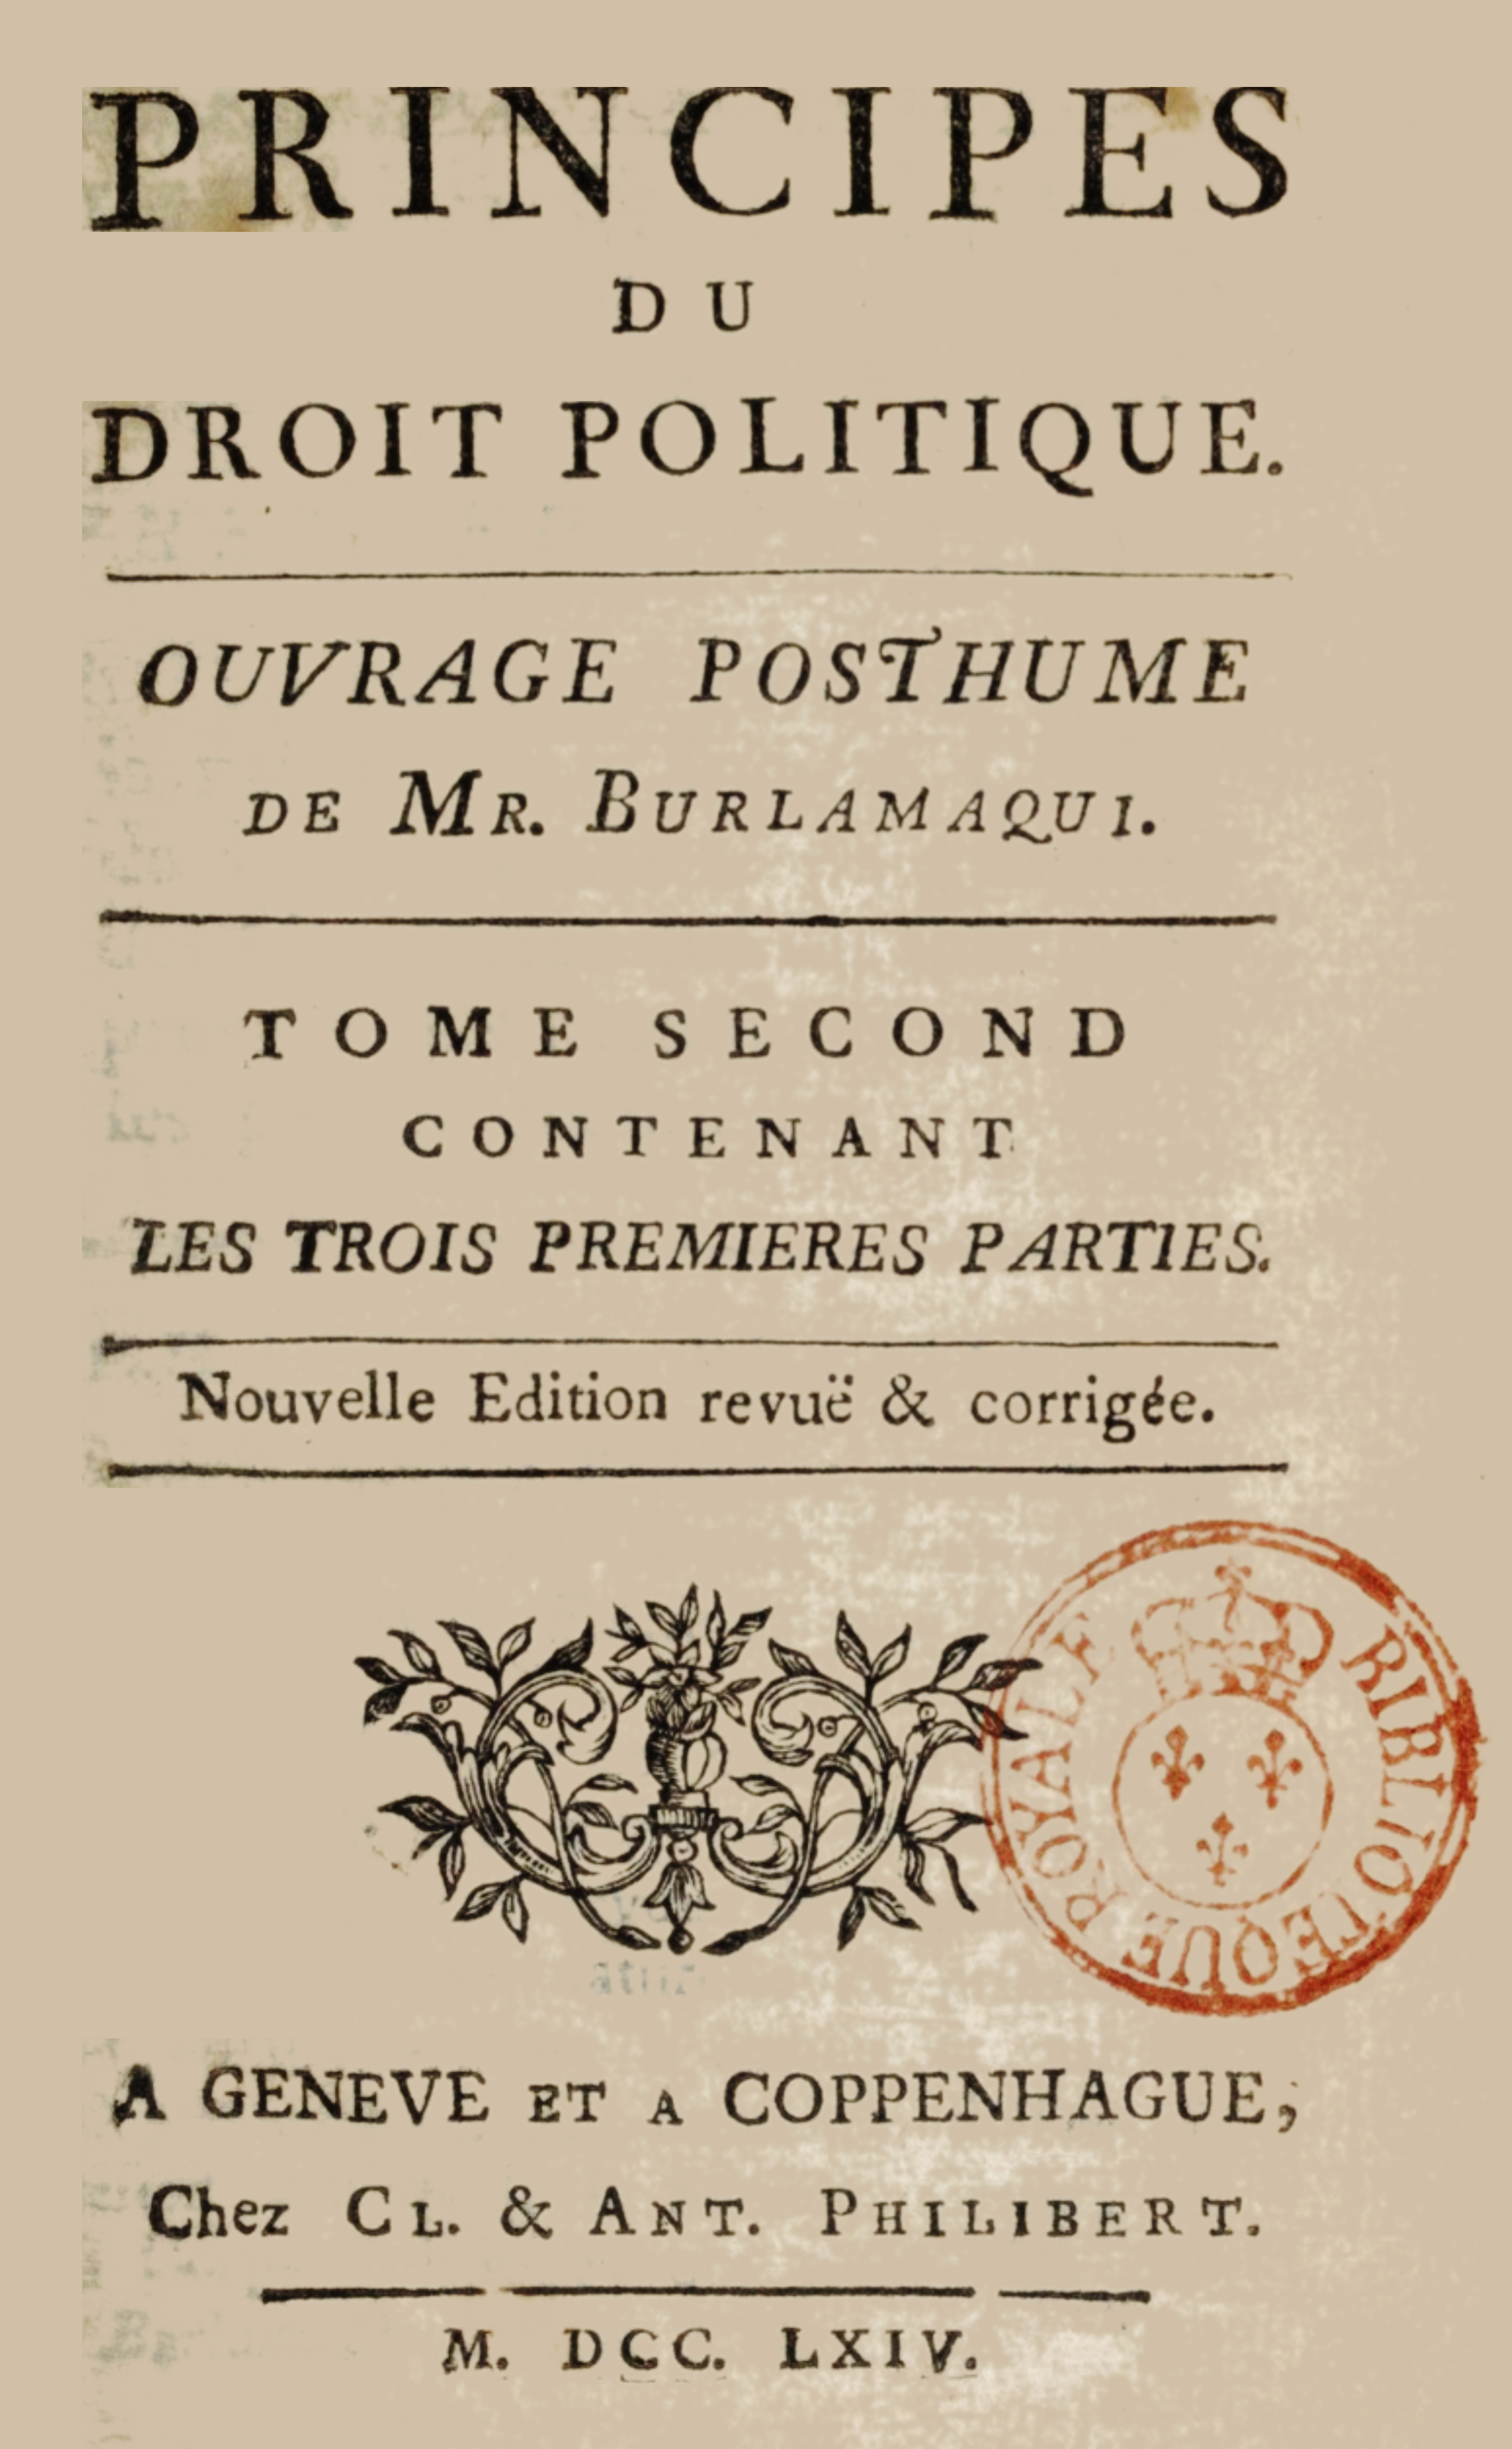 A publication written by Jean-Jacques Burlamaqui